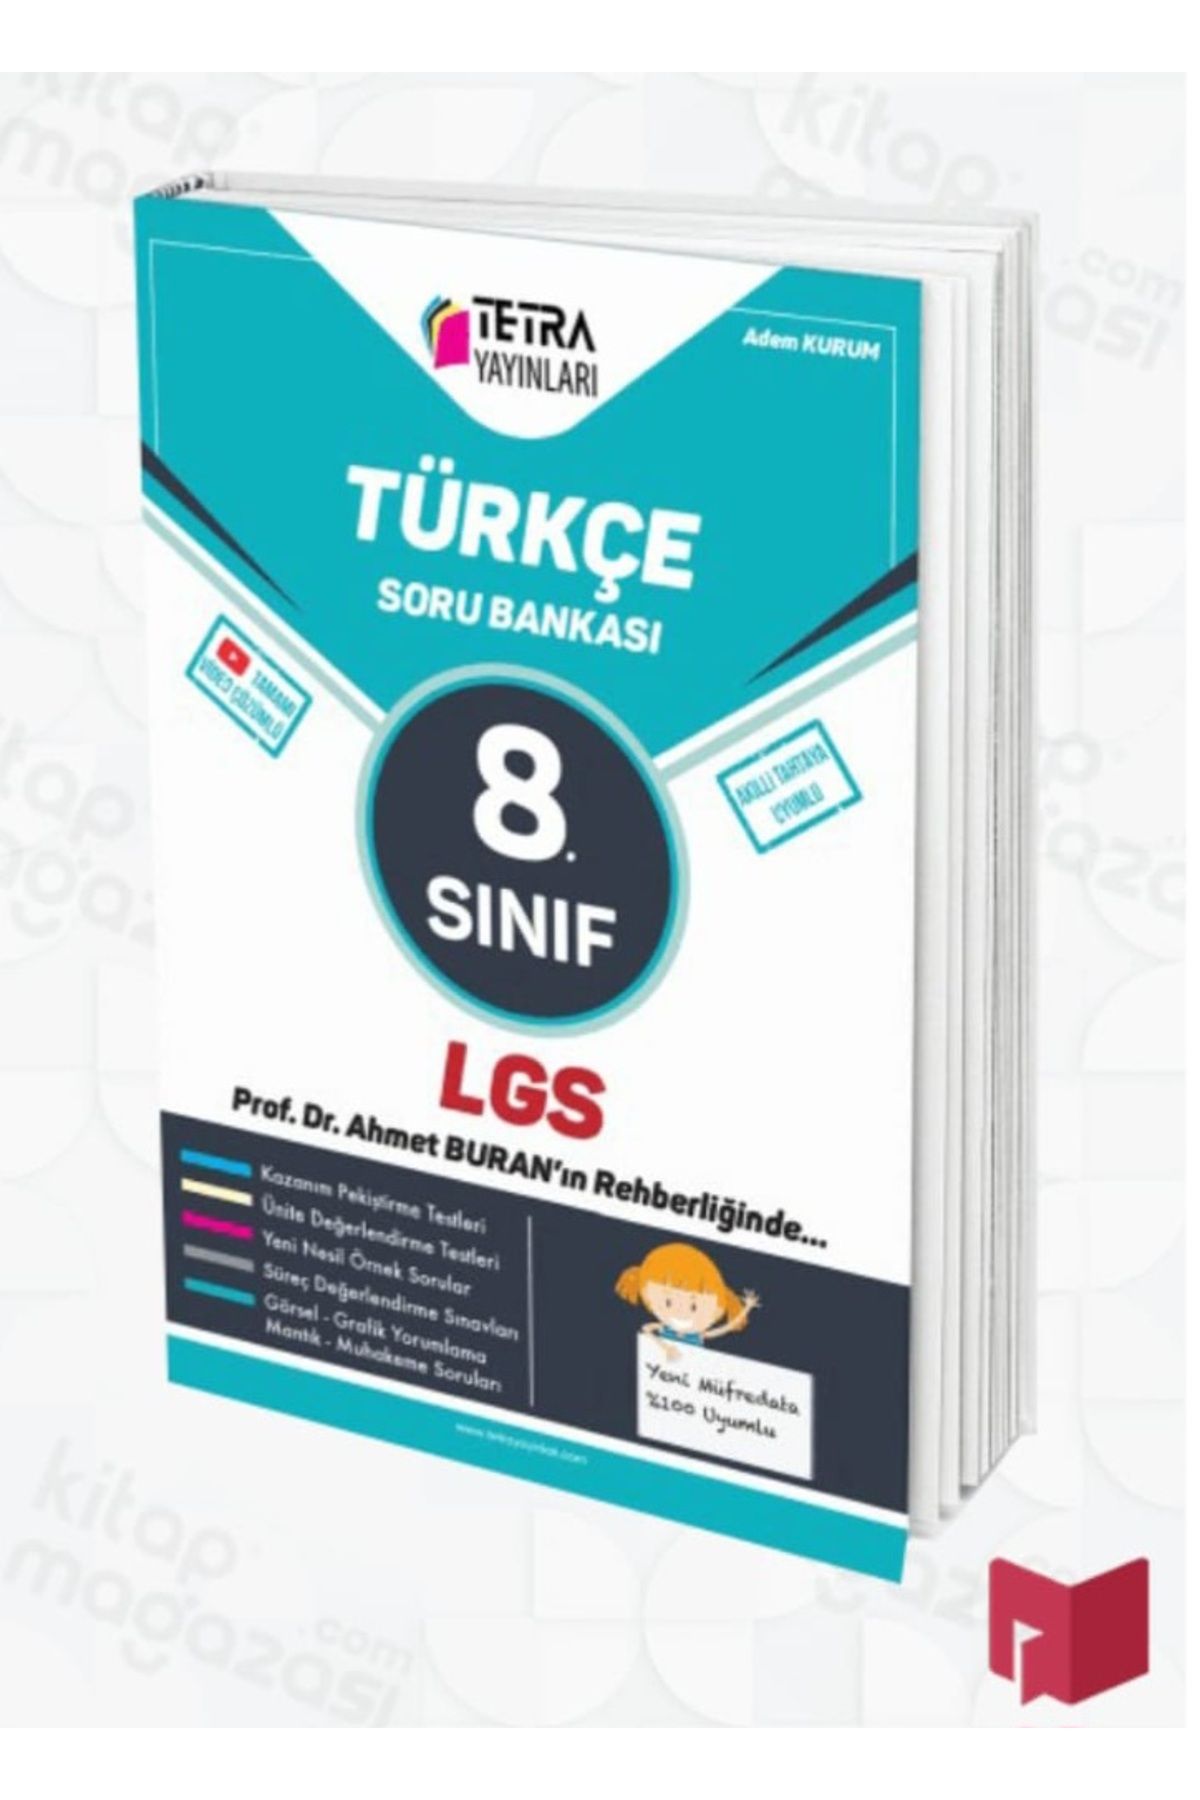 Tetra 8.sınıf türkçe soru bankası